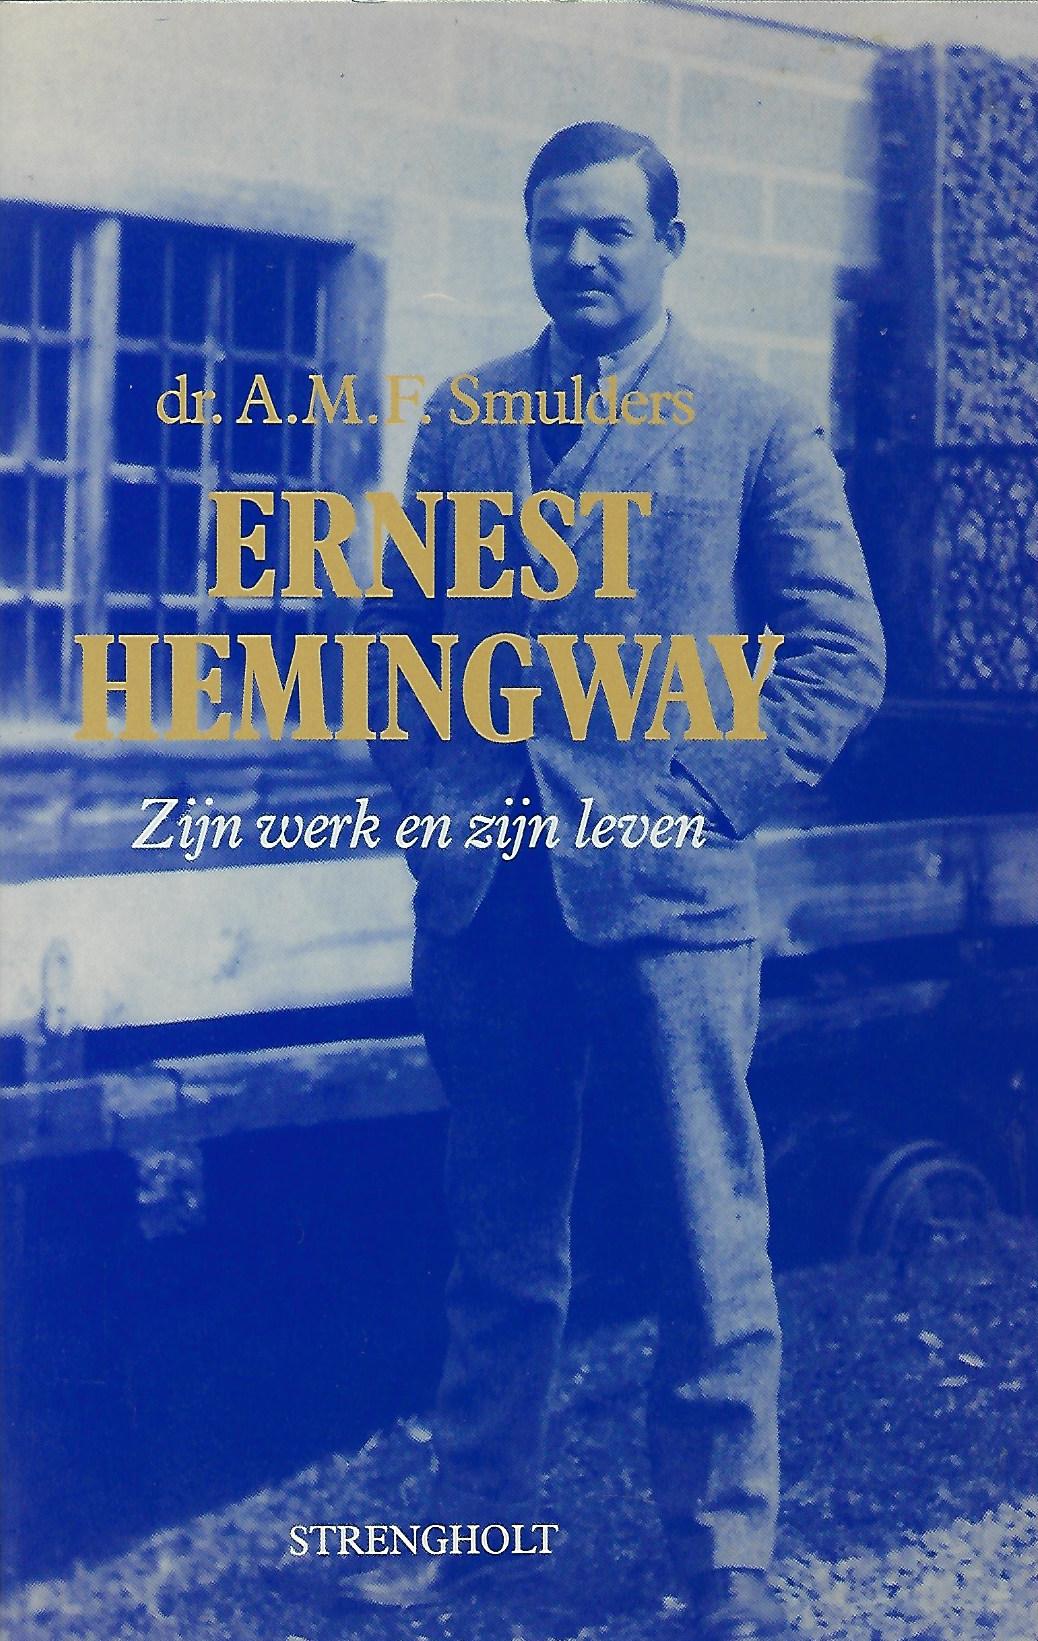 Ernest Hemingway Zijn werk en zijn leven